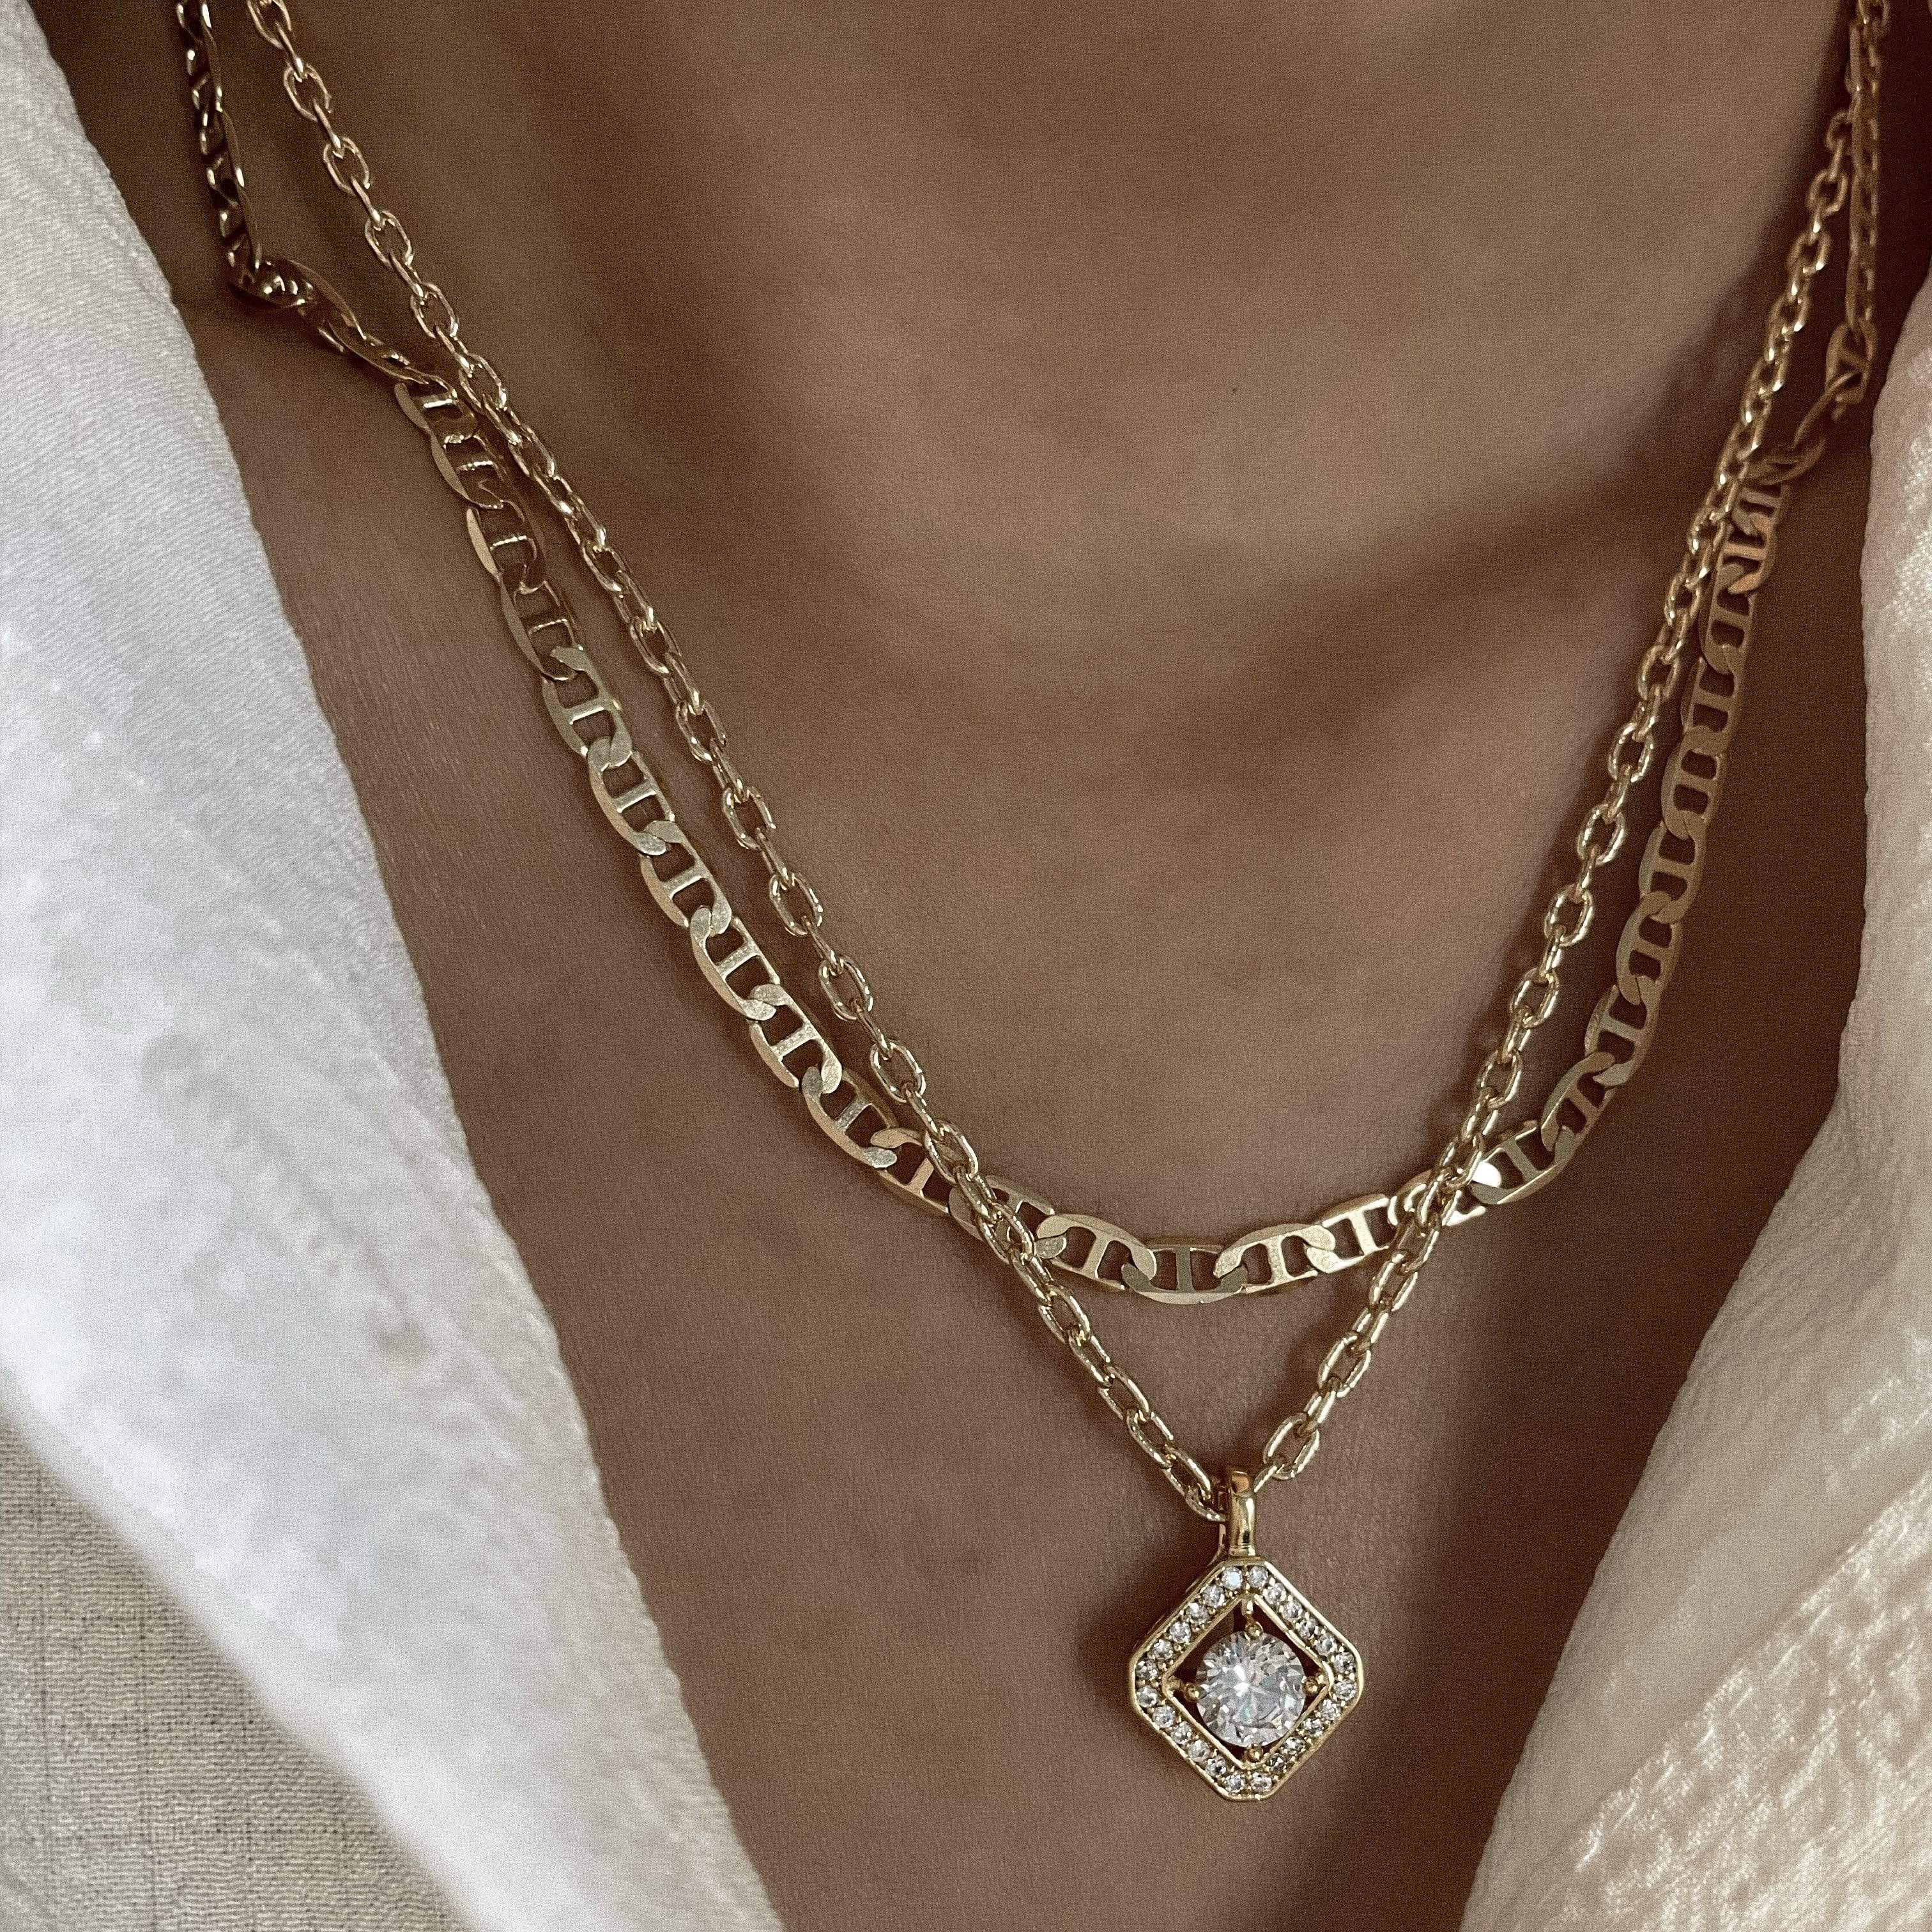 LE sensor necklace Jolie Necklace - Clear